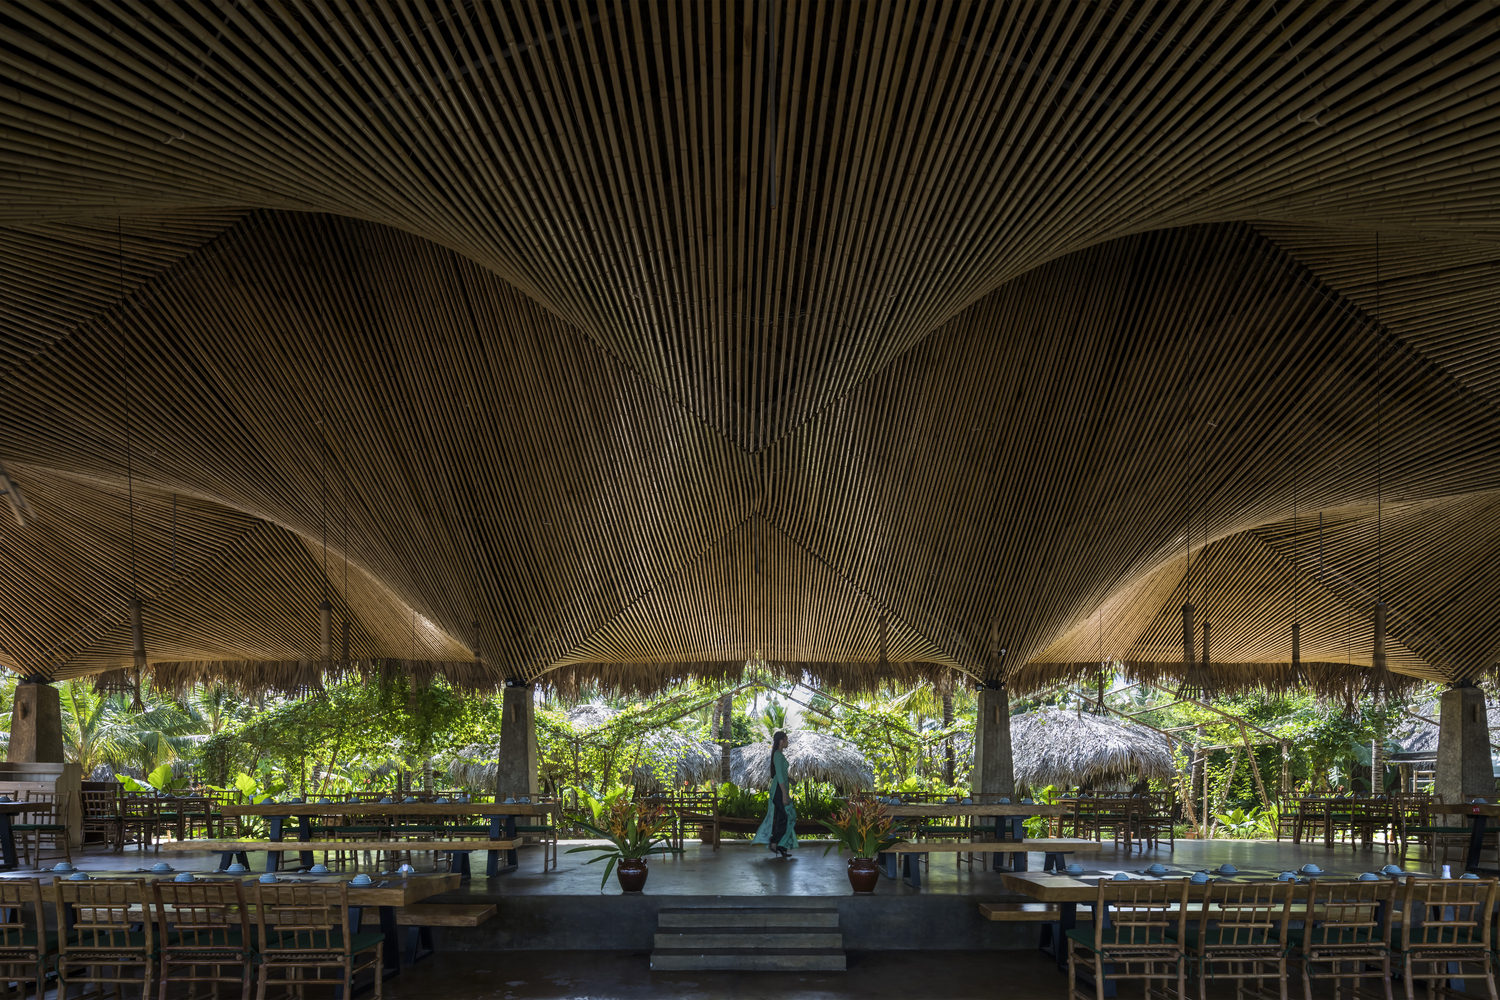 Nhà hàng mái dừa, thân tre ven sông ở miền Tây nổi bật trên báo ngoại - Ảnh 3.